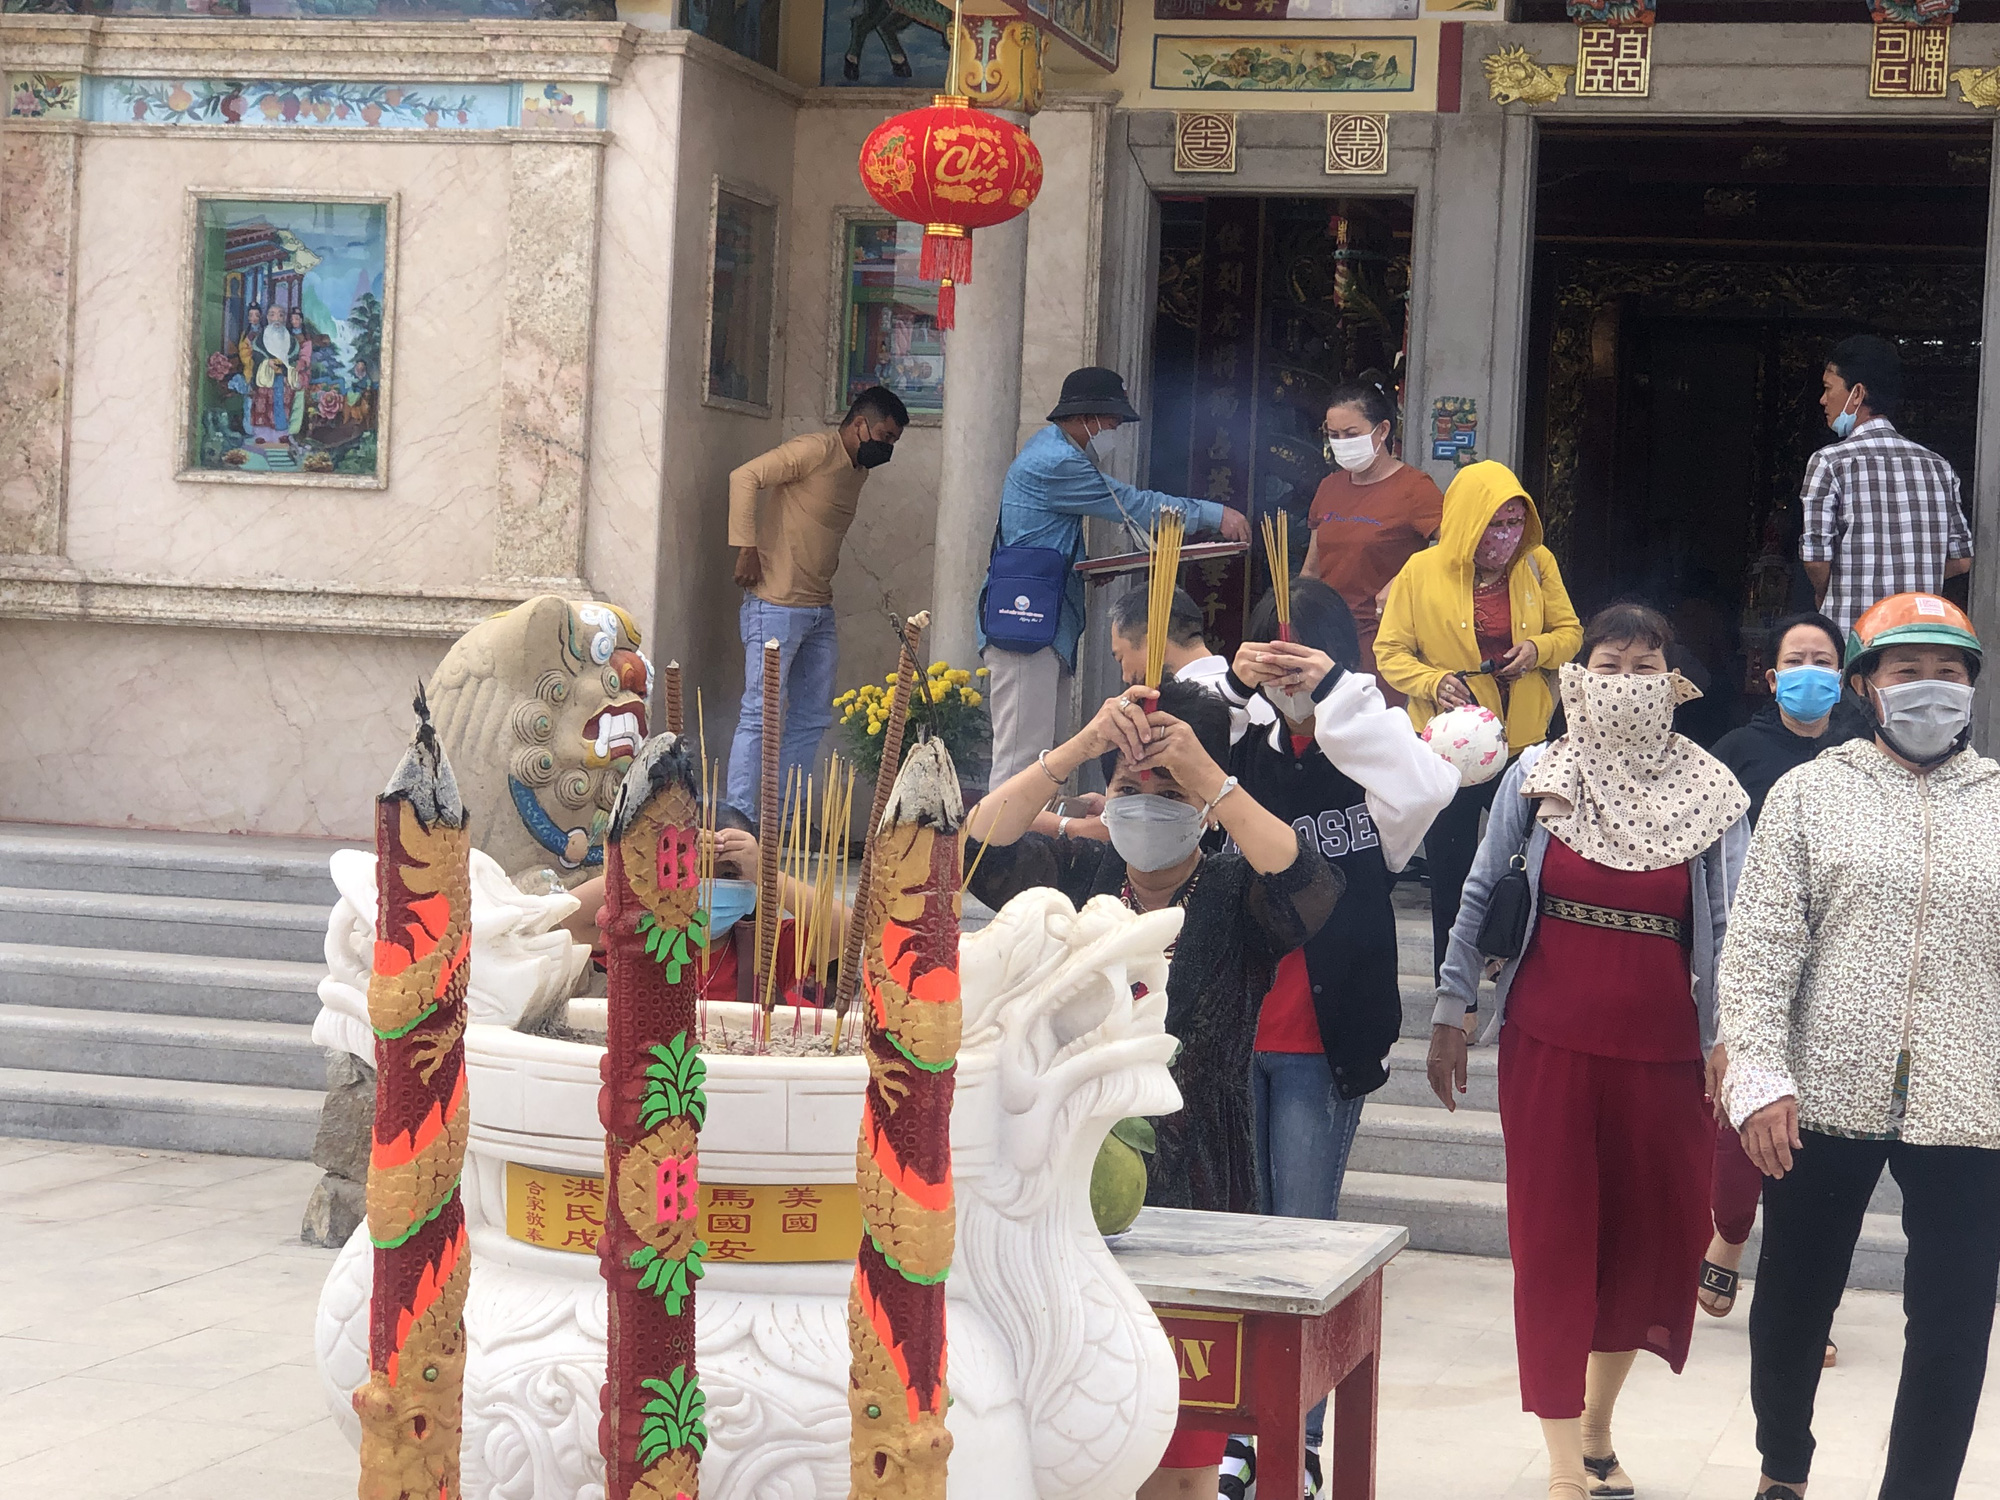 Tết, người dân, lễ chùa, dã ngoại: Tết là khoảng thời gian tuyệt vời để tận hưởng tuần lễ nghỉ dài cùng bạn bè và người thân. Hãy thưởng thức hình ảnh rực rỡ của lễ hội Tết, những người tham gia lễ chùa và những hoạt động dã ngoại thú vị. Hãy cùng chạm vào truyền thống văn hóa đẹp đẽ của người Việt Nam.